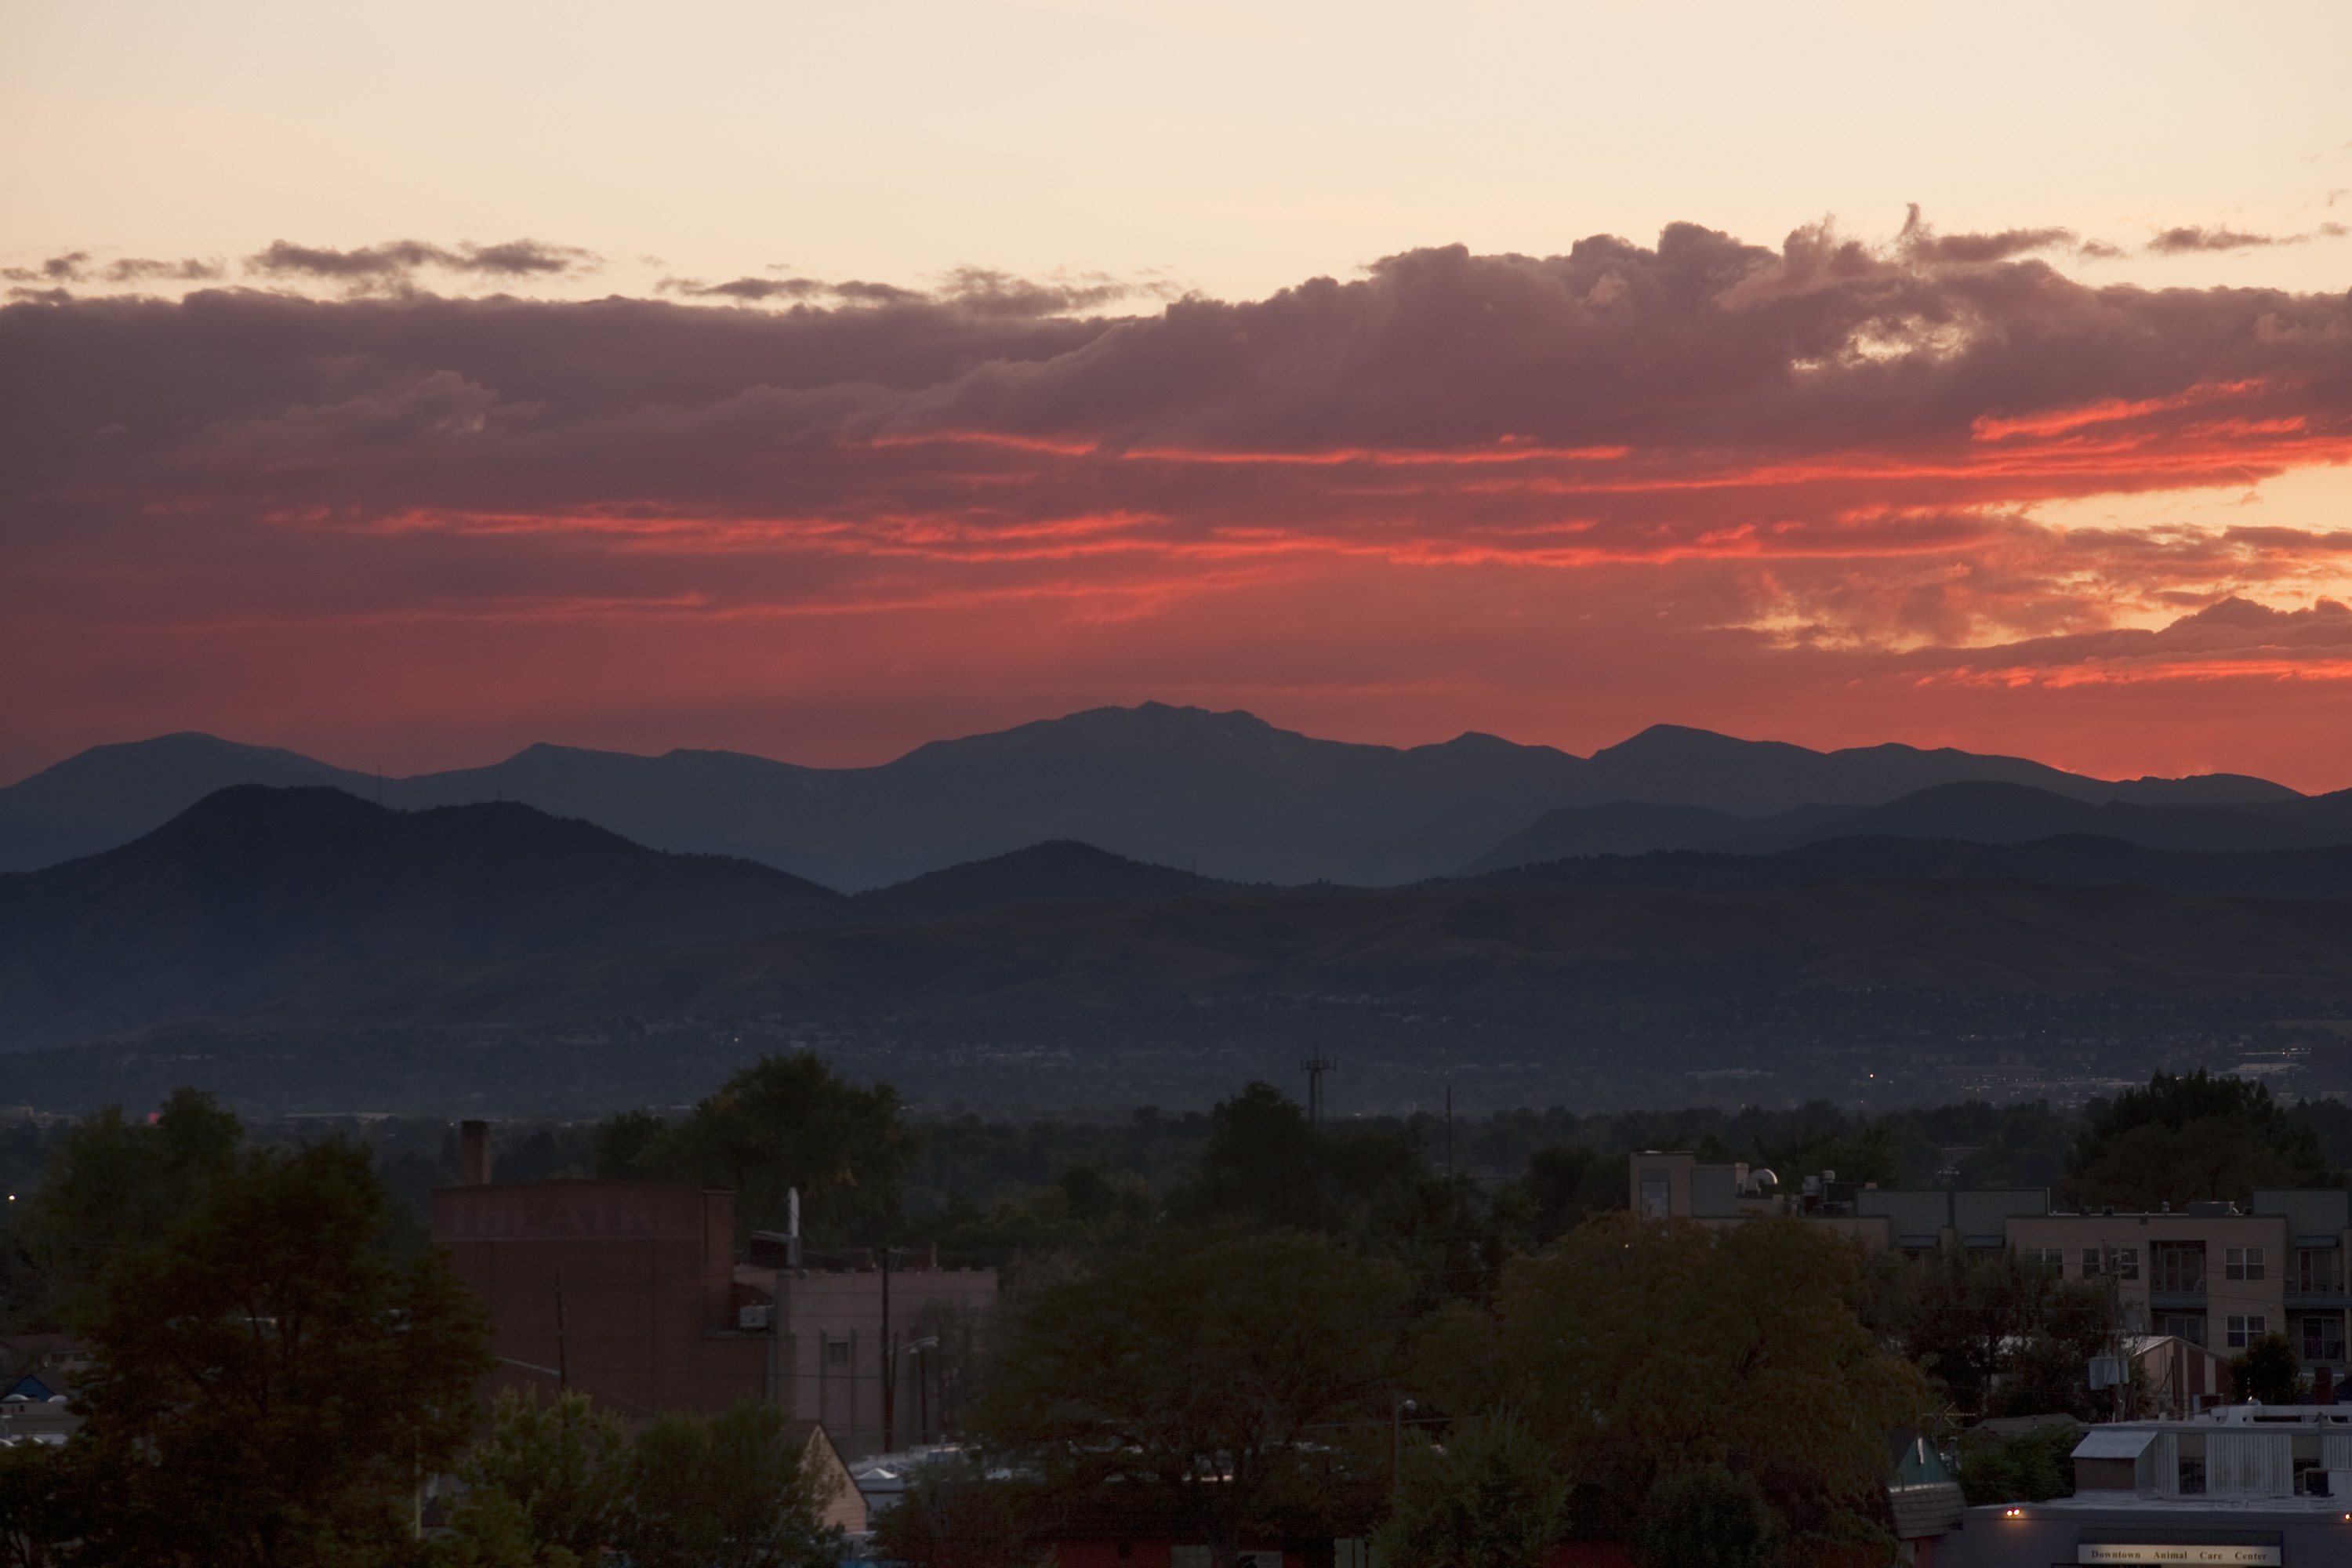 Mount Evans sunset - September 25, 2011